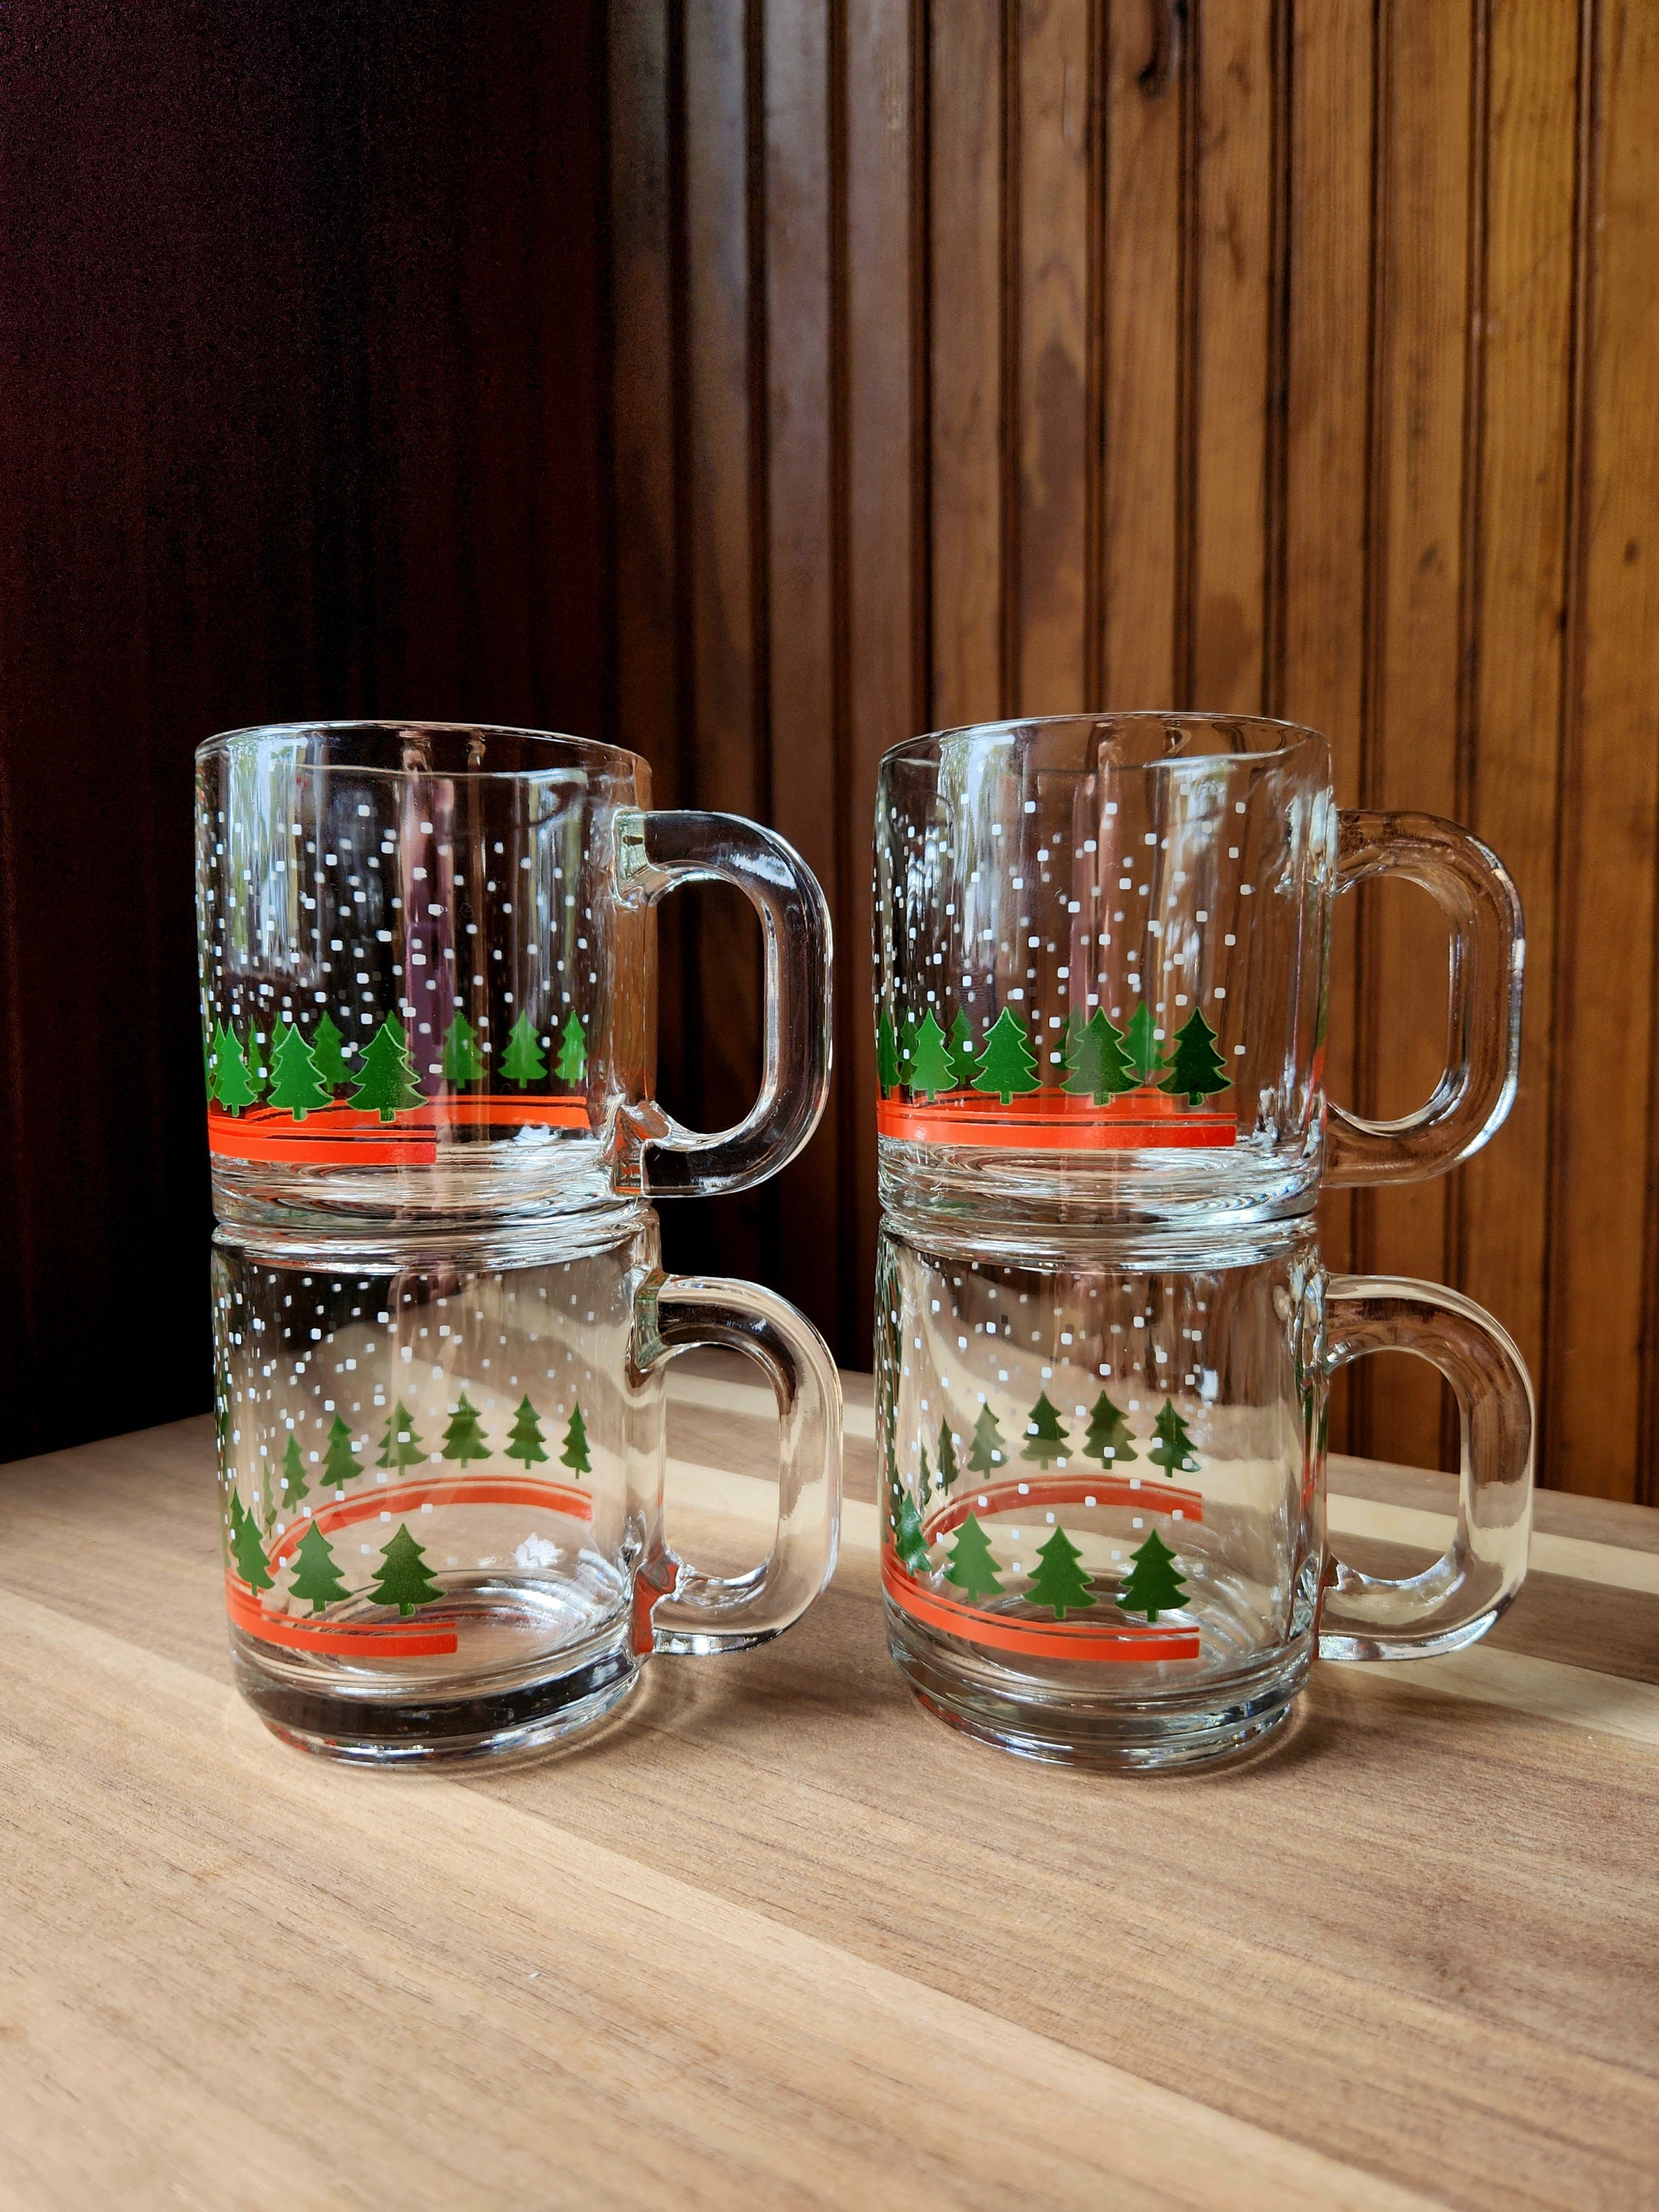  Layhit Christmas Glass Coffee Mugs Set of 4, 12 oz